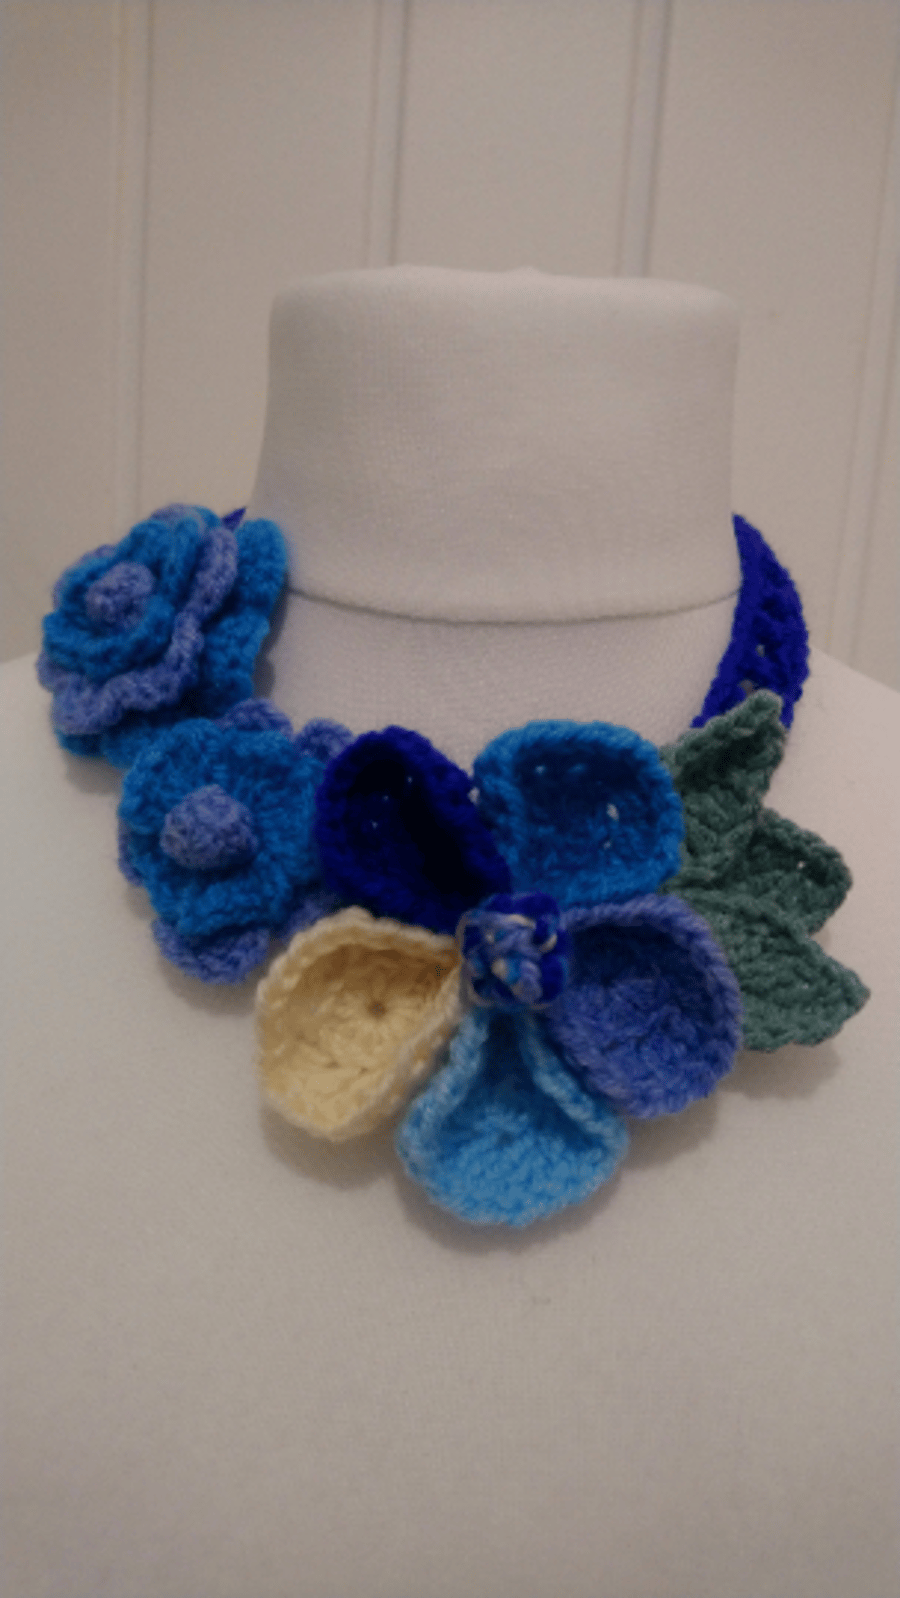 Blue Crochet Trio Flowers Necklace